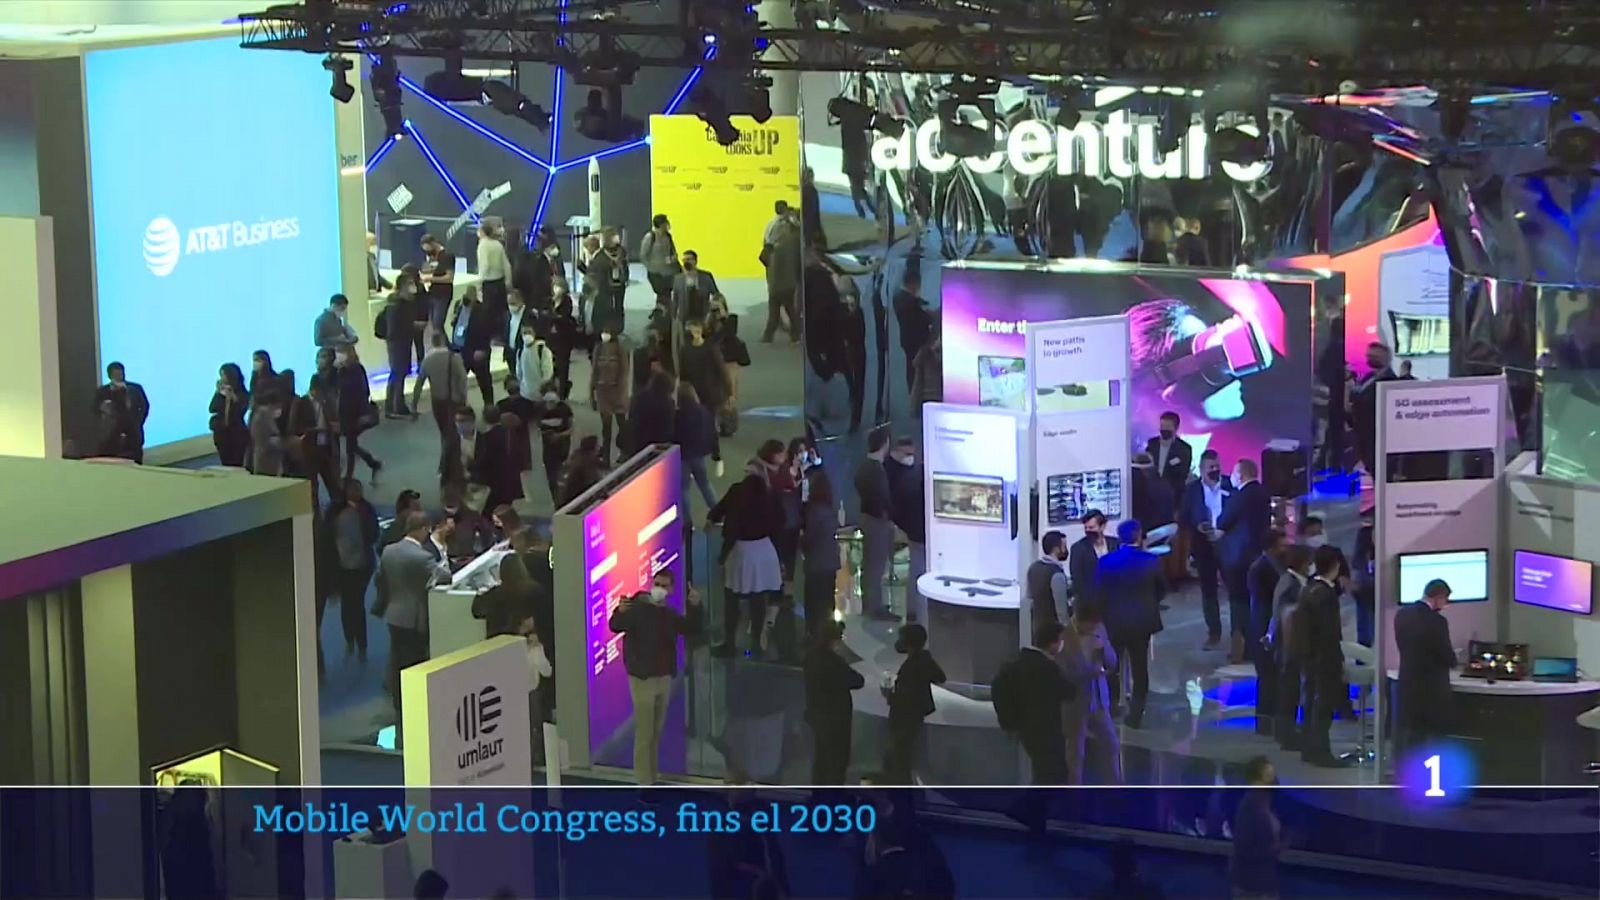 Mobile World Congress, fins el 2030: l'aposta per Barcelona s'allarga 6 anys més